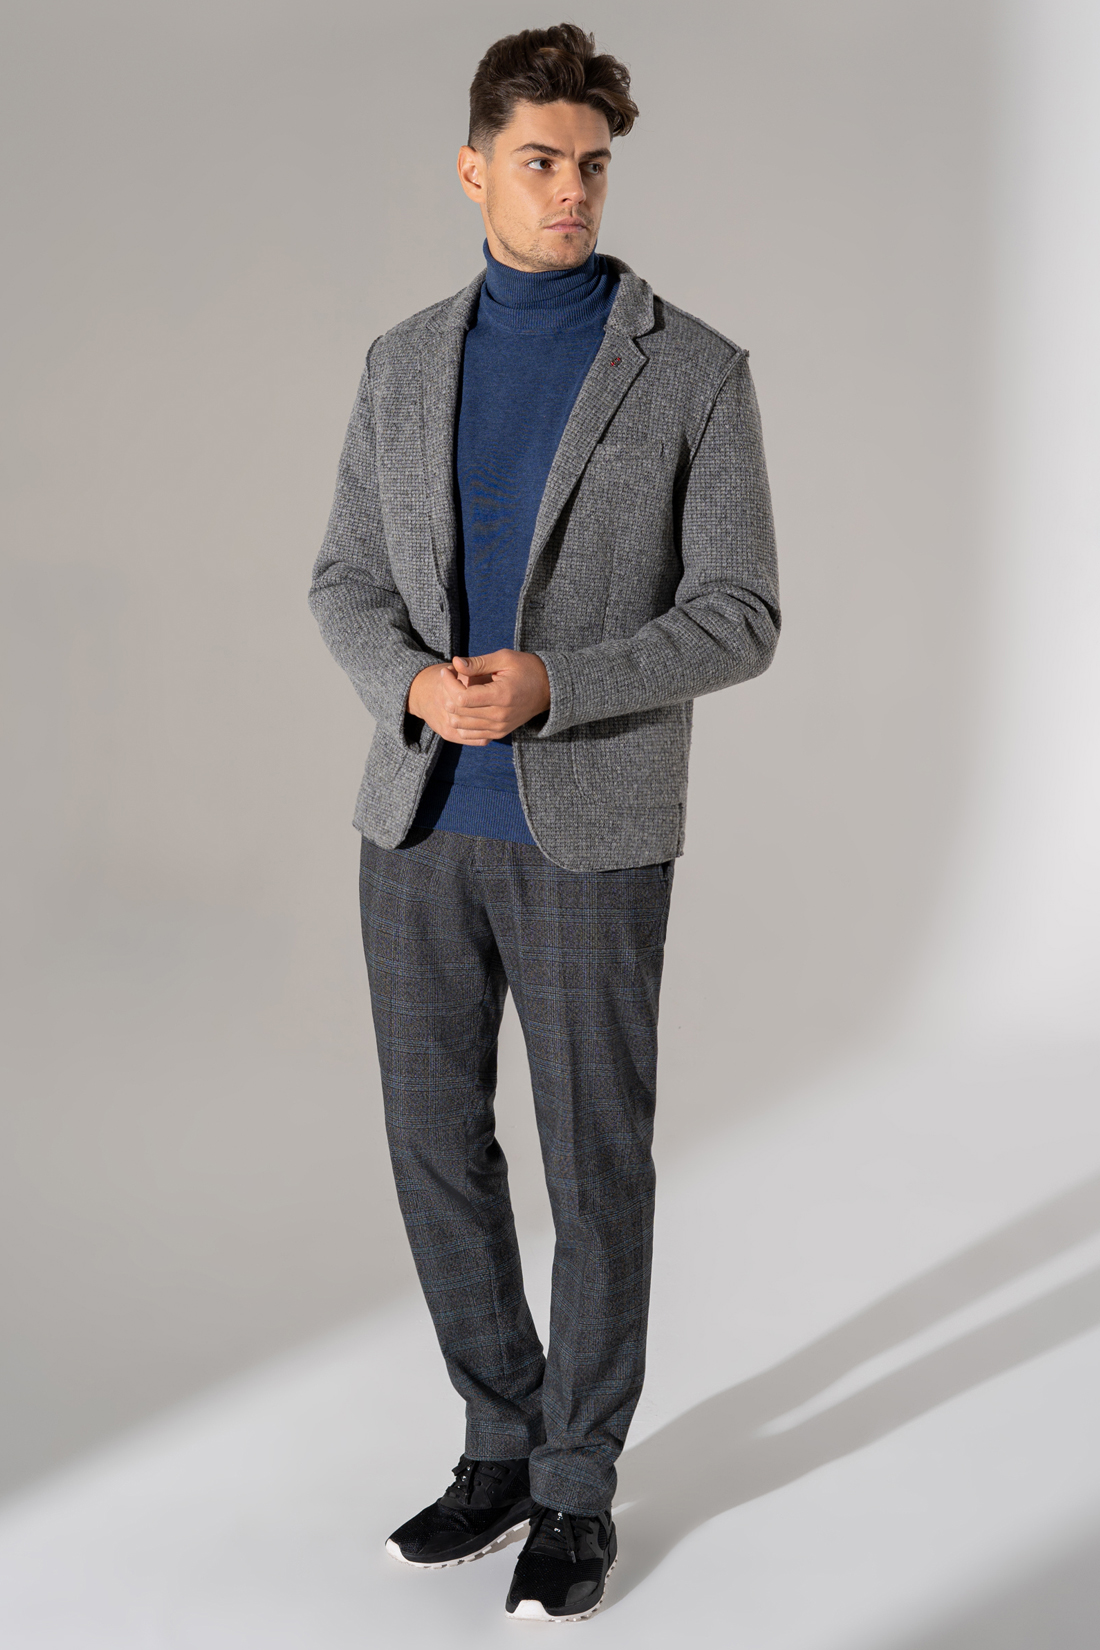 Серый пиджак с шерстью (арт. baon B629503), размер S, цвет deep grey melange#серый